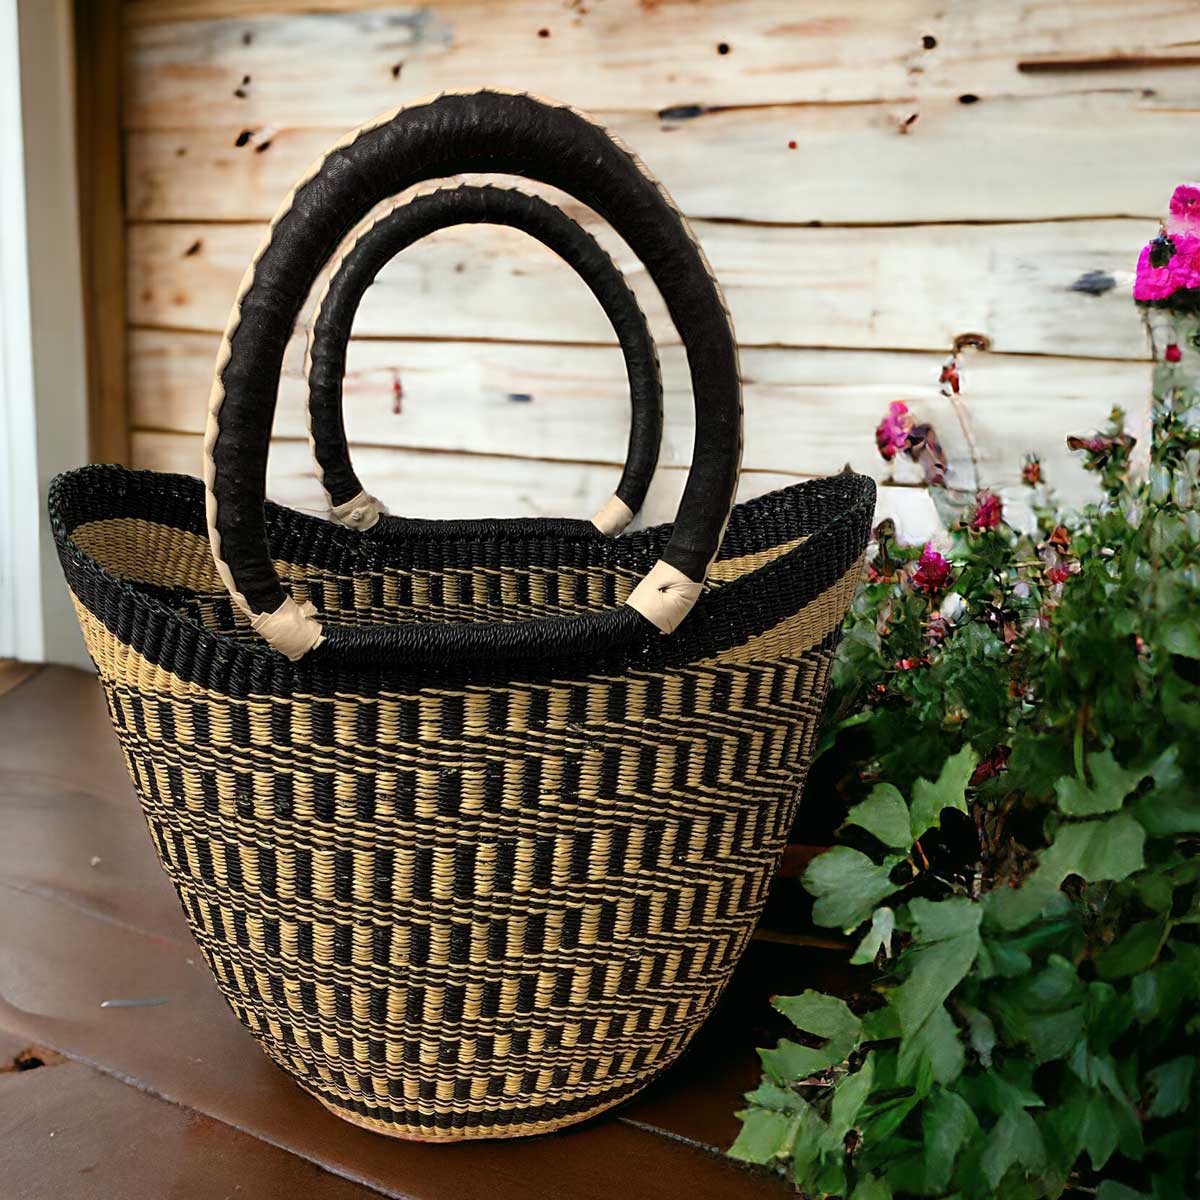 Black & Natural Patterned Market Basket